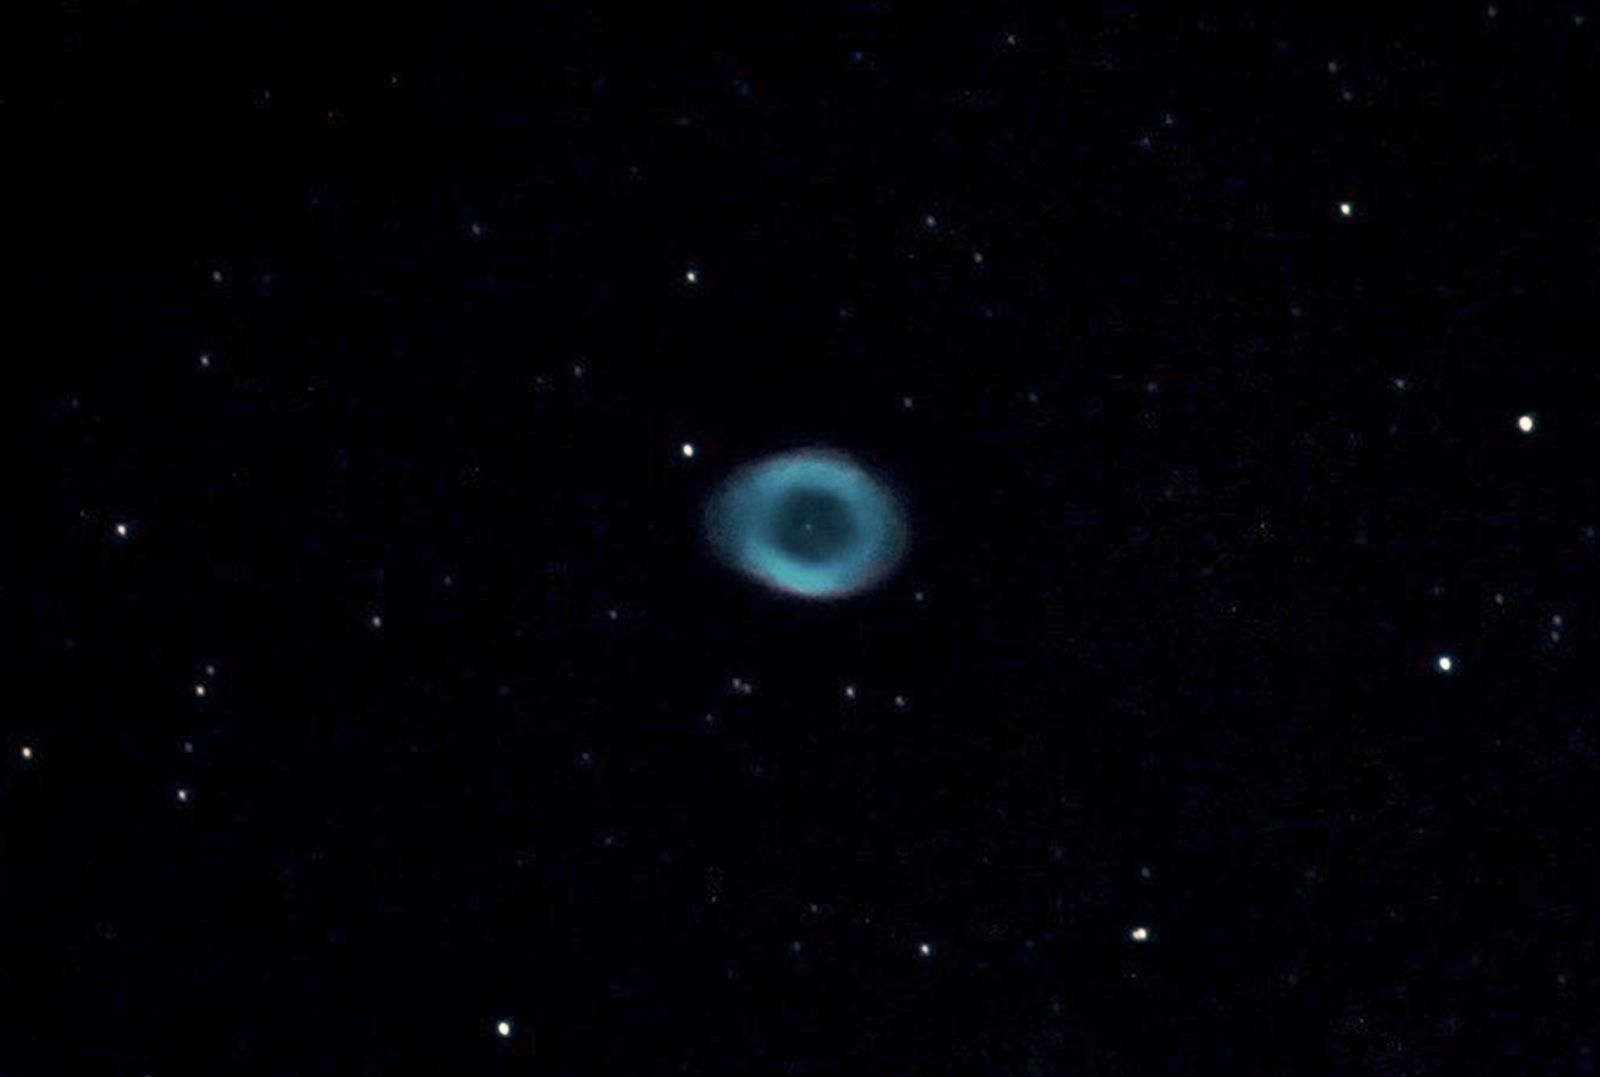 M57 a planetary nebula